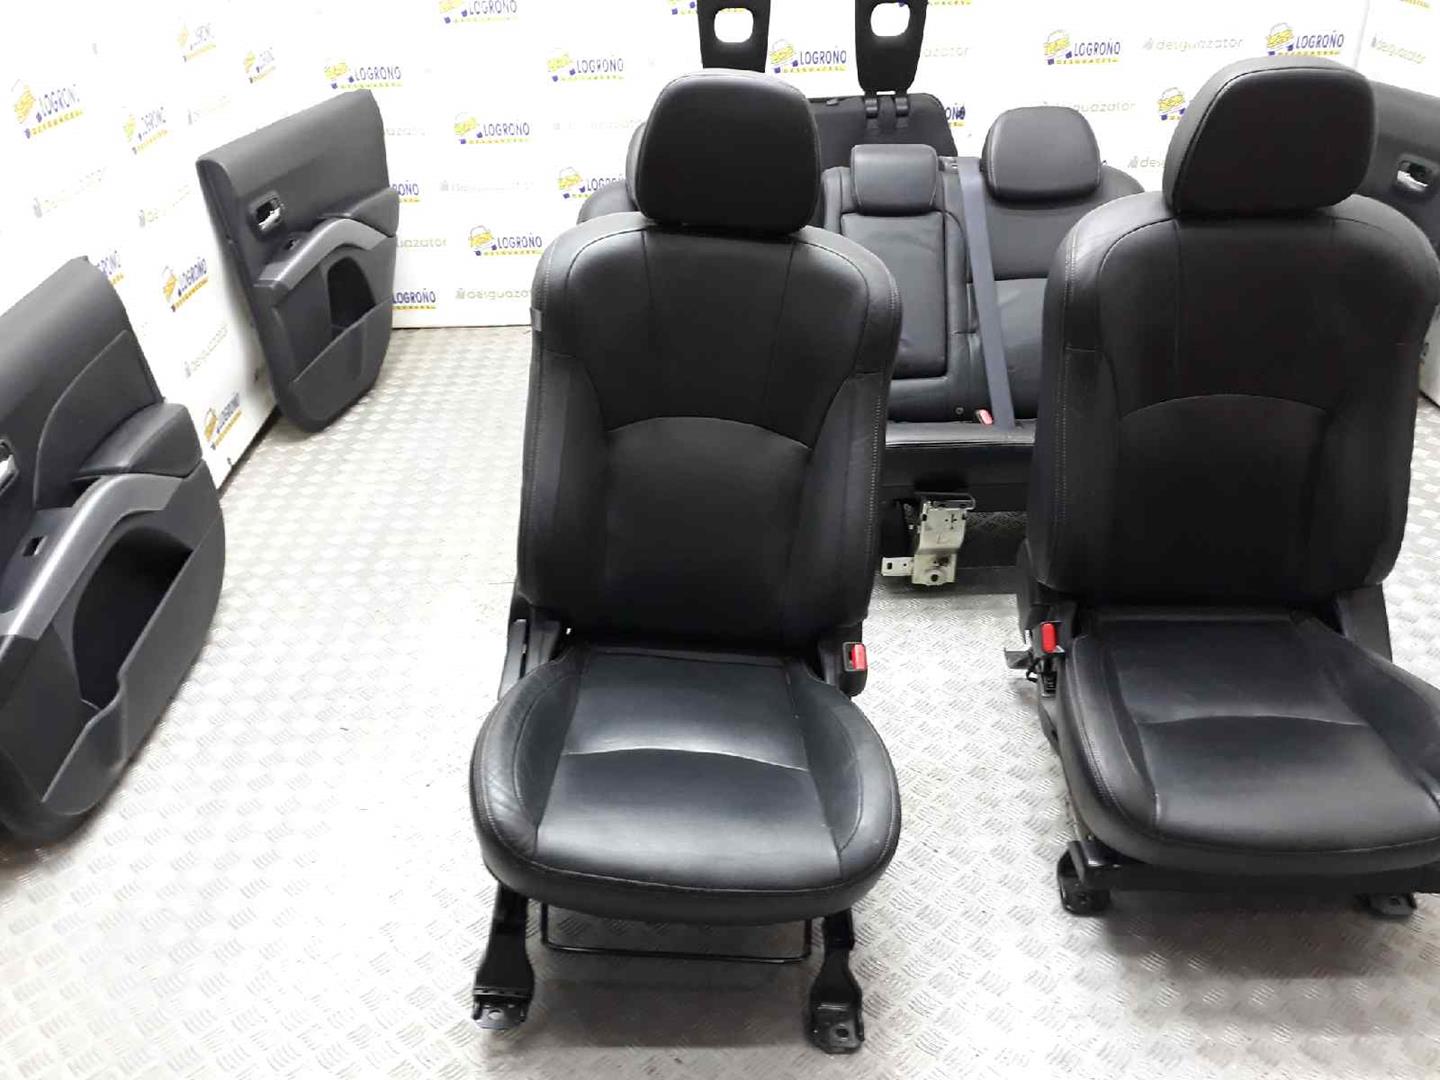 CITROËN C-Crosser 1 generation (2007-2013) Seats ASIENTOSDECUERO 19668491